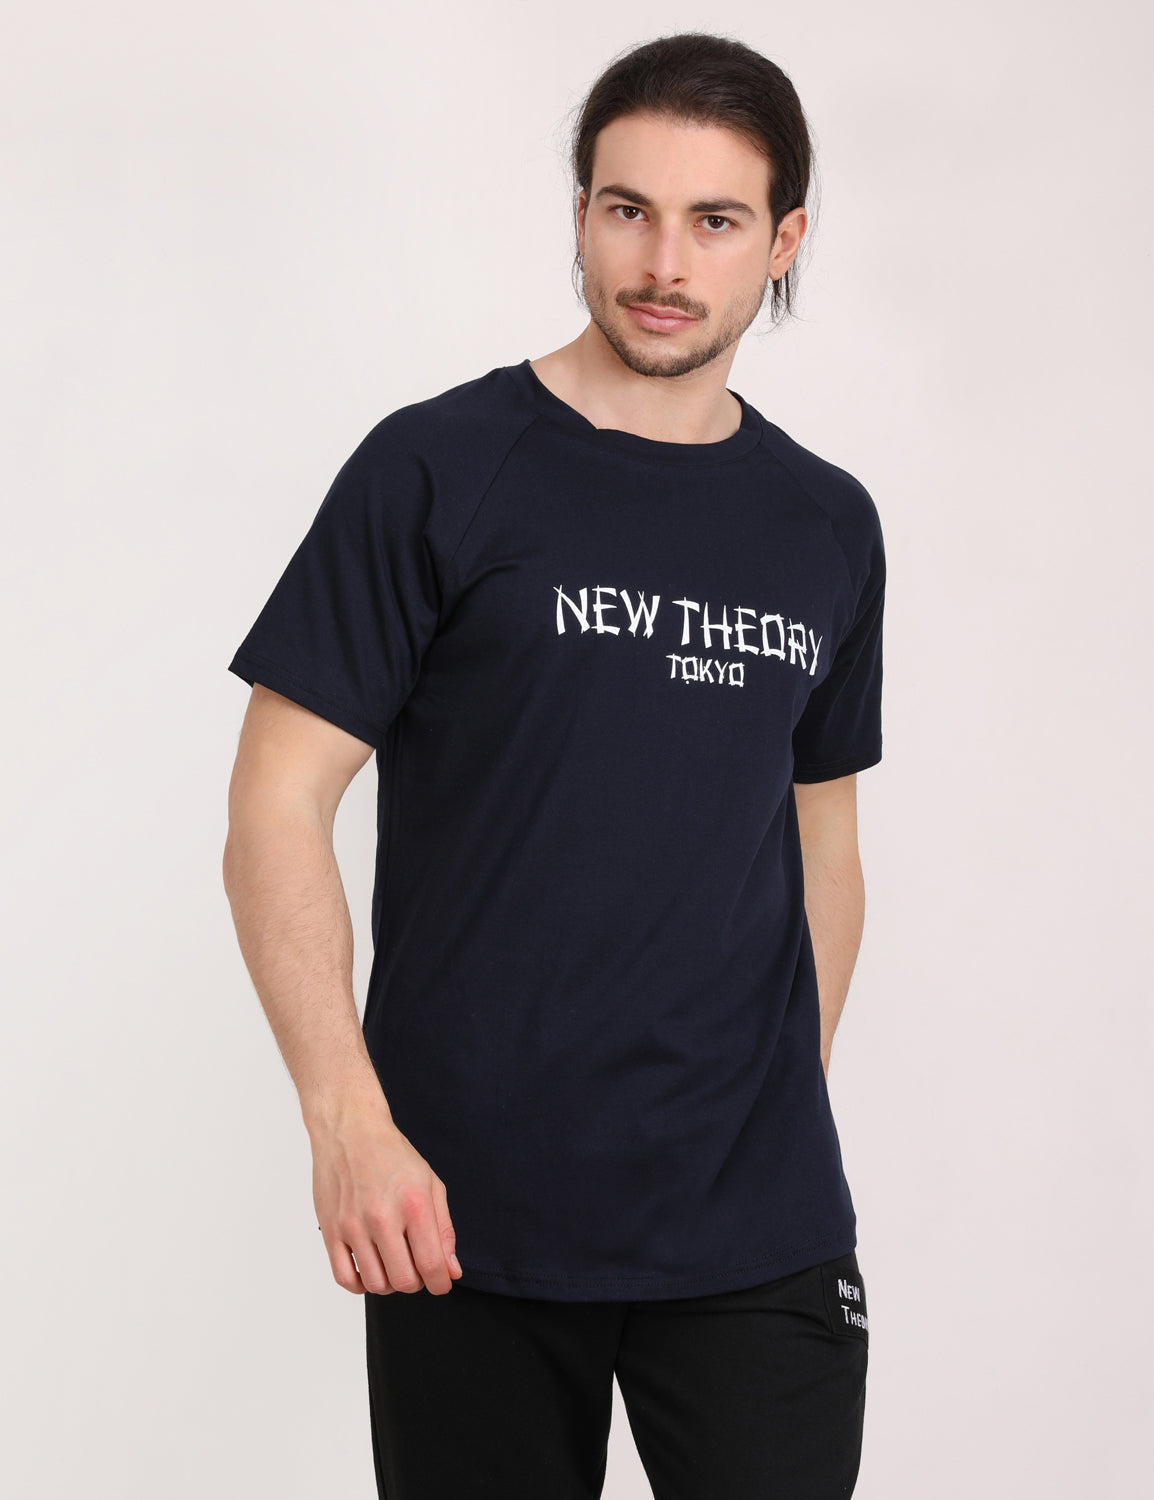 New Theory Tokyo Printed T-shirt